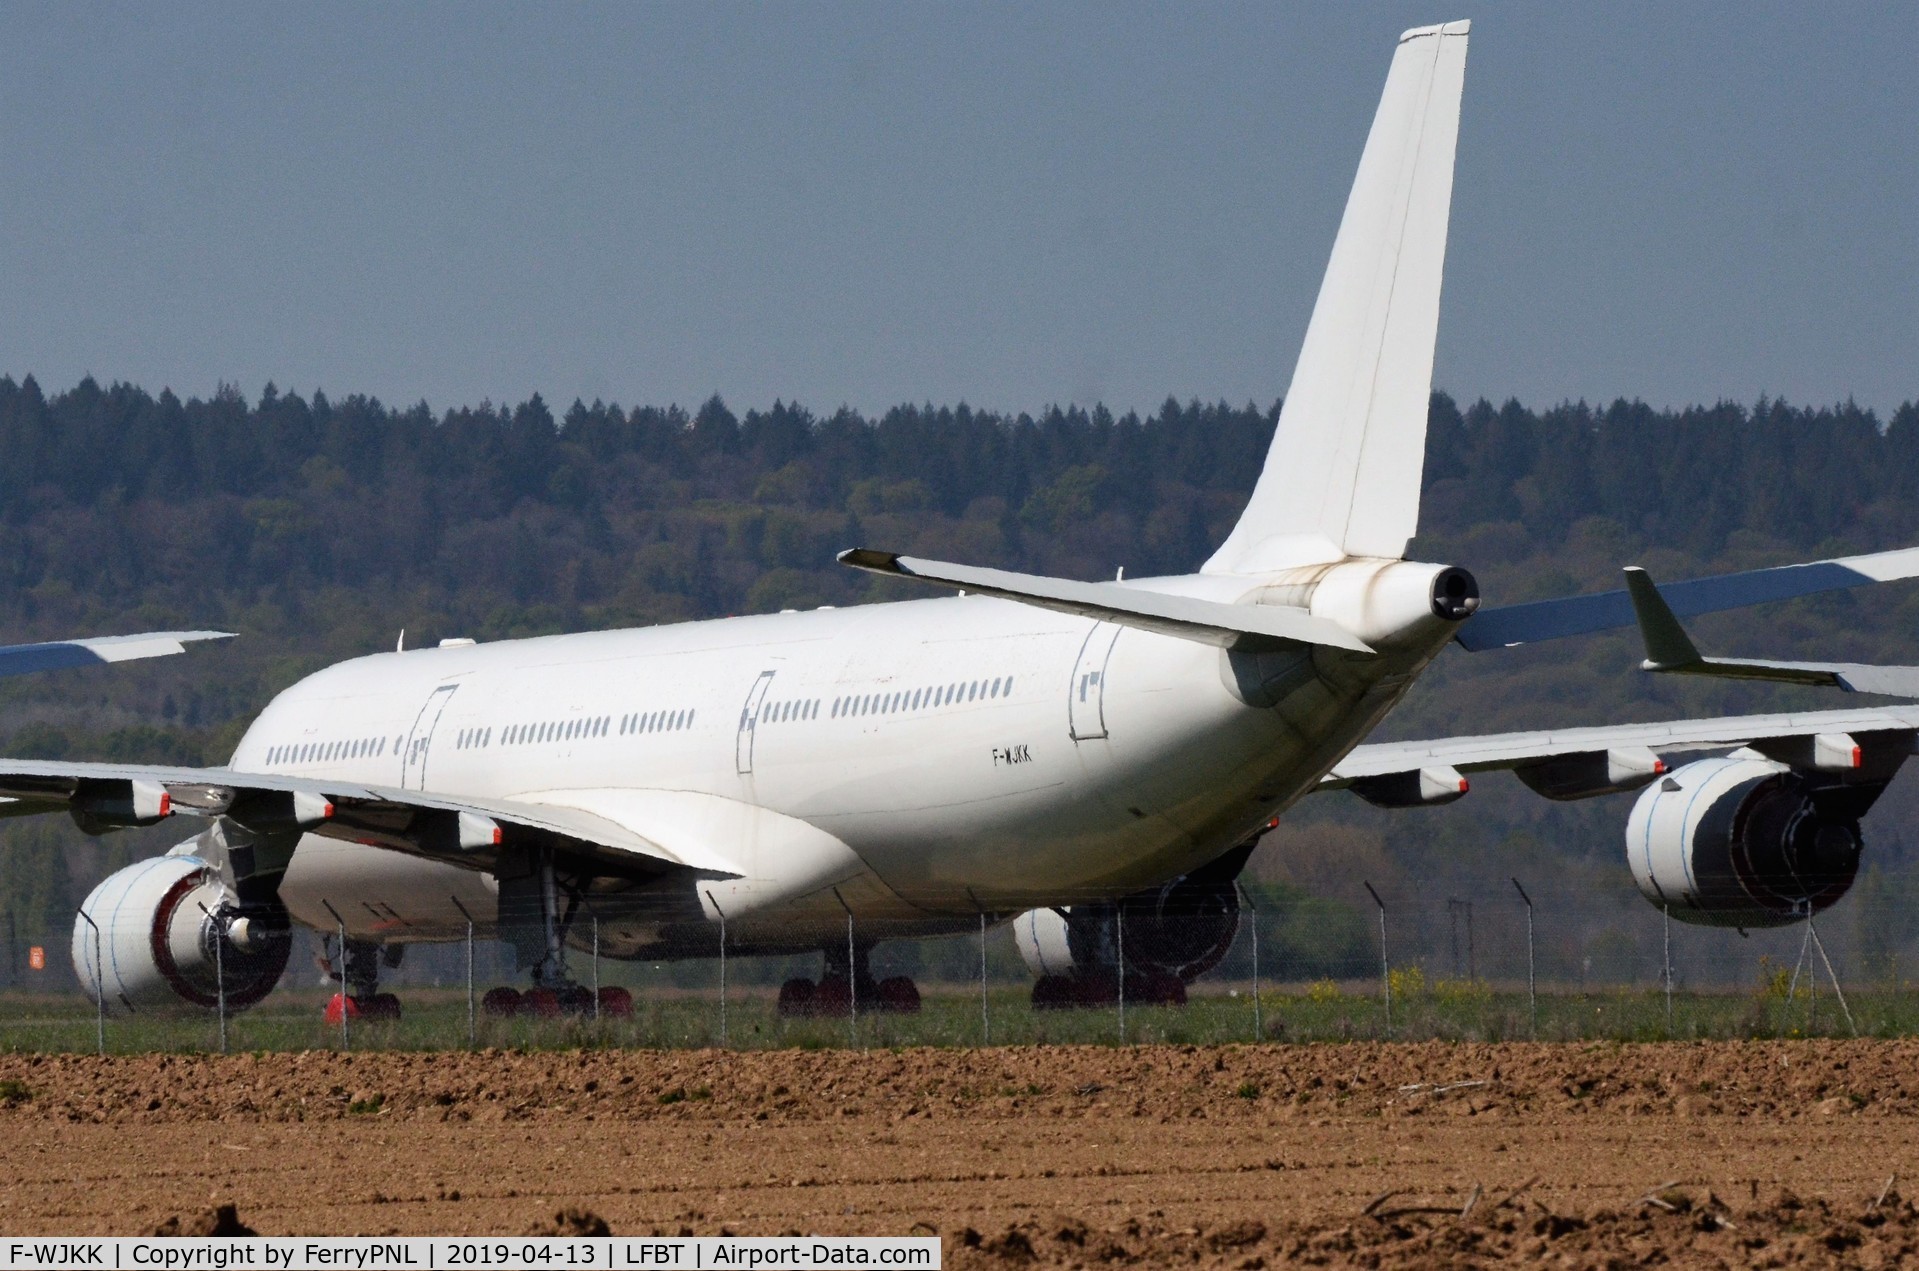 F-WJKK, 2003 Airbus A340-541 C/N 492, Ex Singapore (9V-SGA) A345 stored in Tarbes, France.